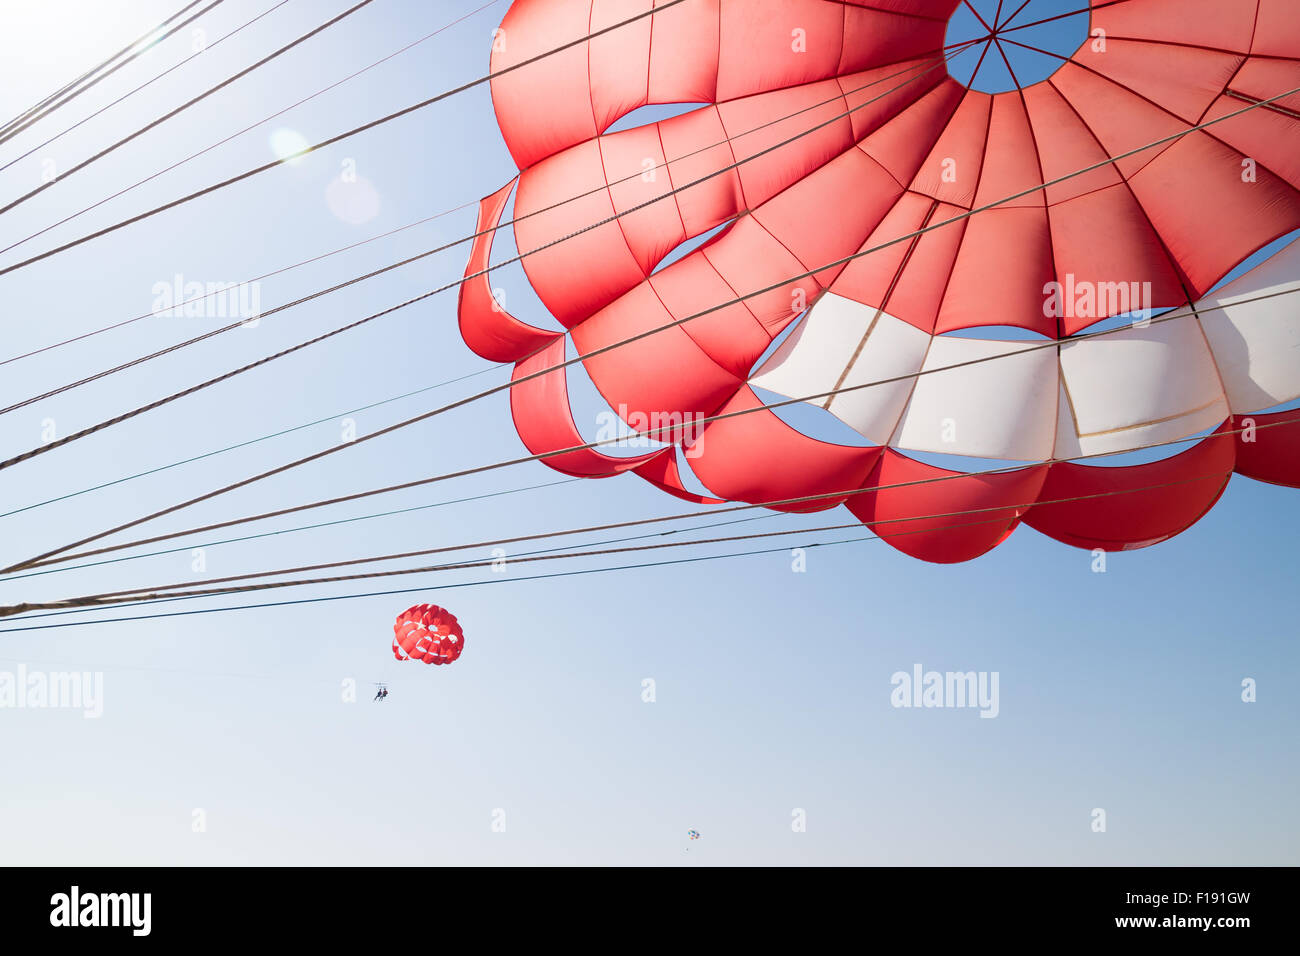 Un Parapente, paracaídas con otros dos parasailers en el fondo Foto de stock